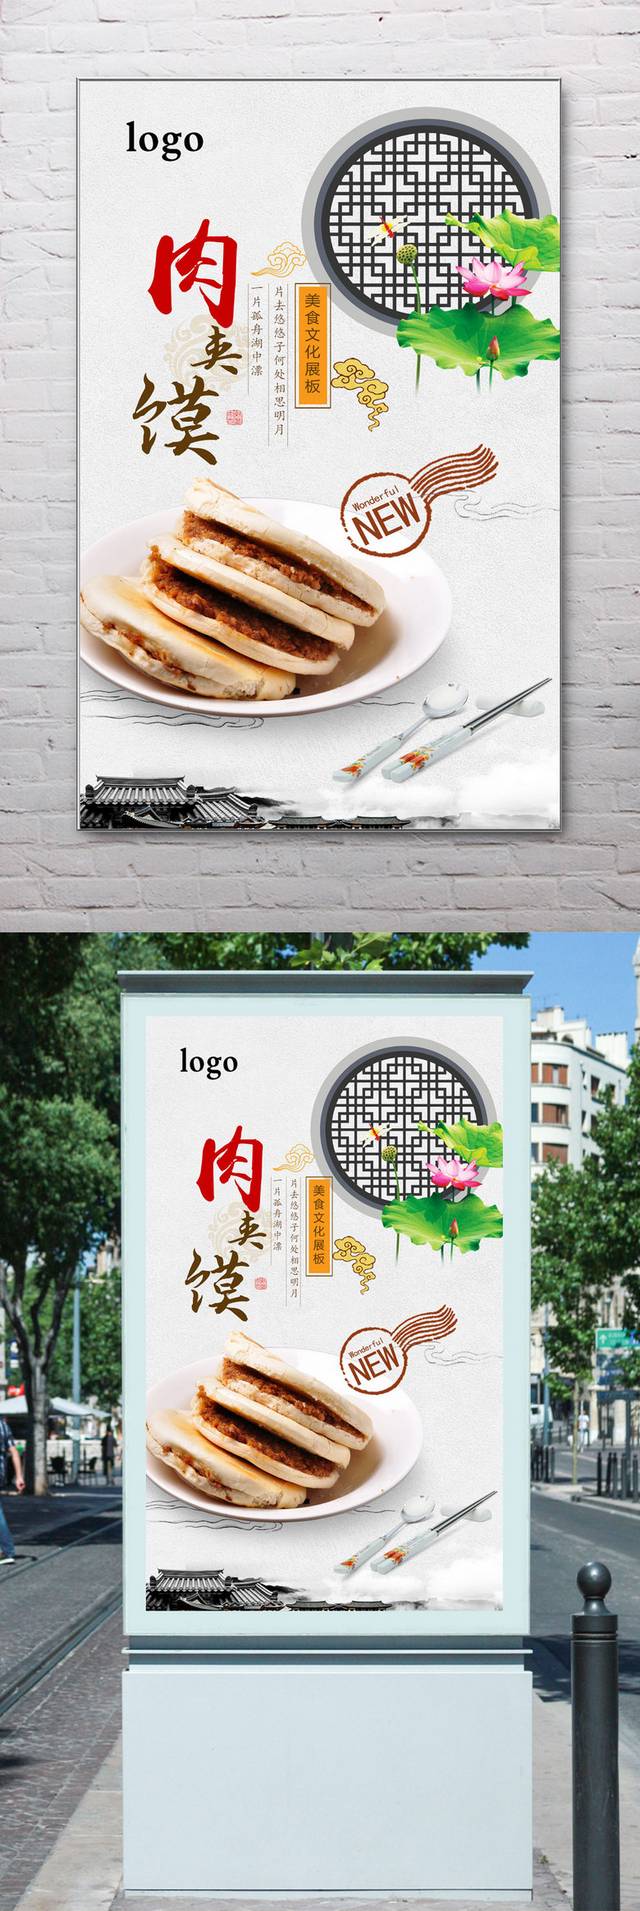 中国风经典肉夹馍宣传海报设计